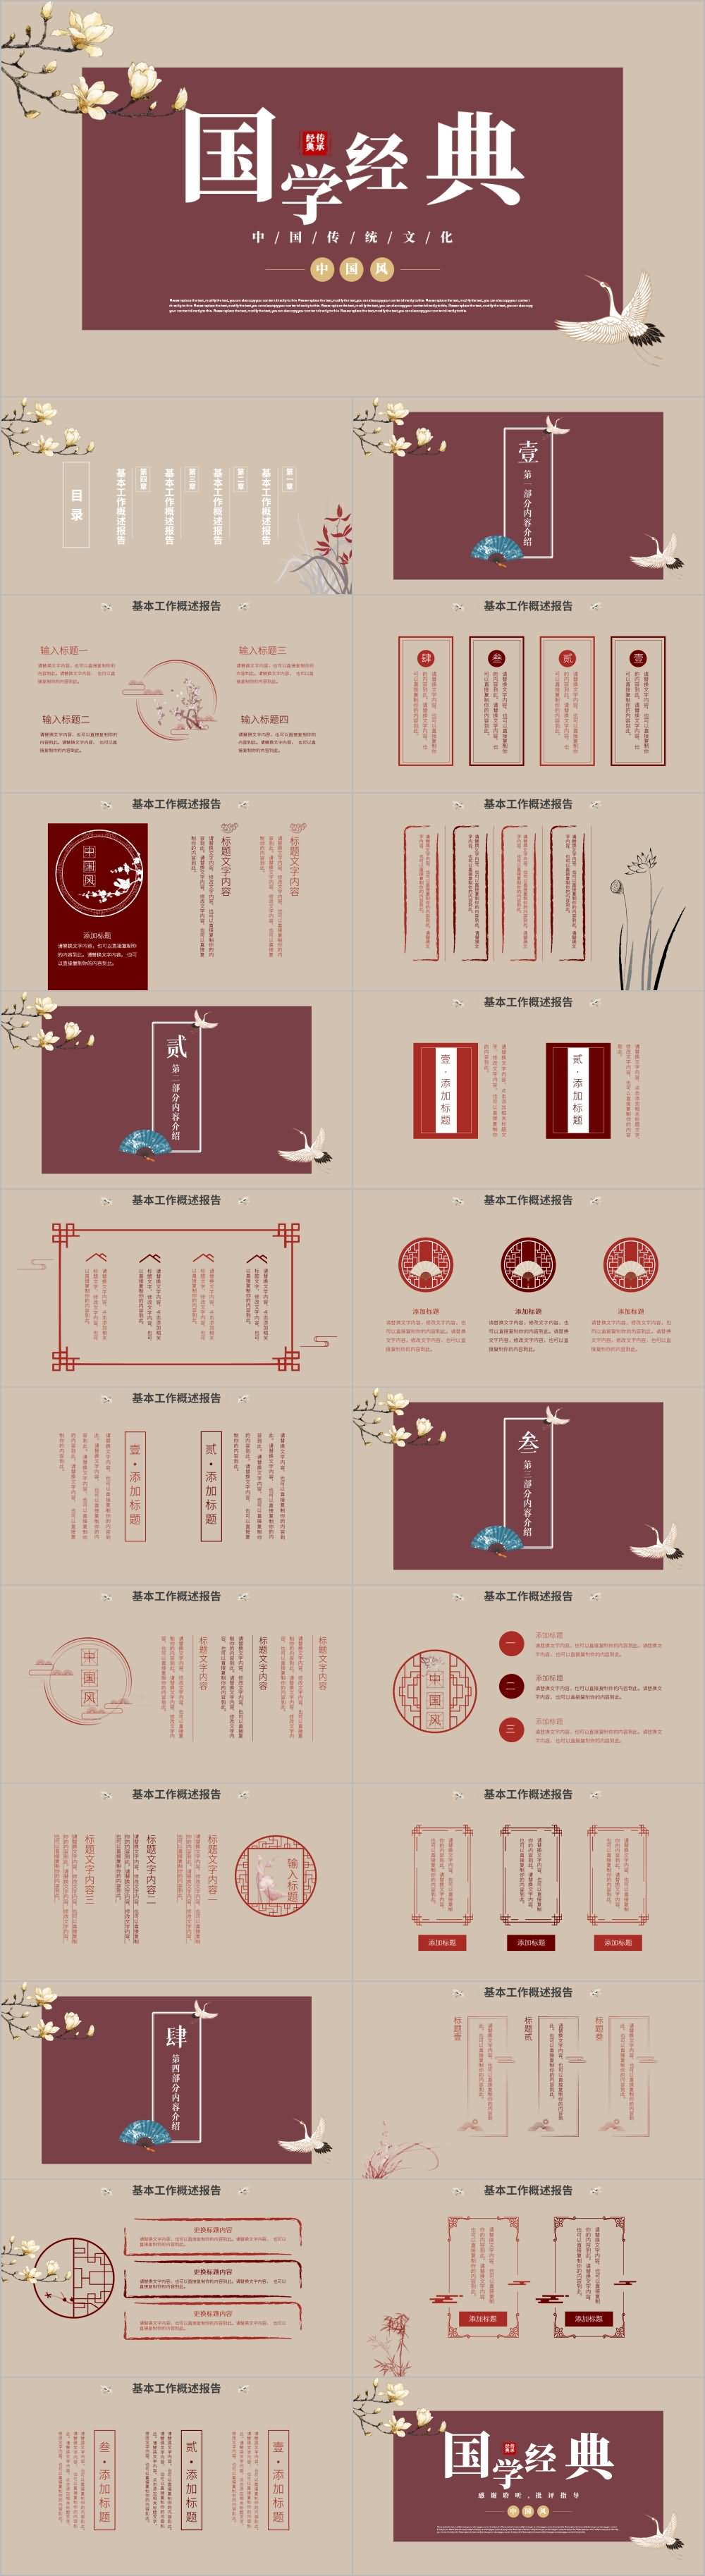 仙鹤中国风国学经典传统文化PPT模板